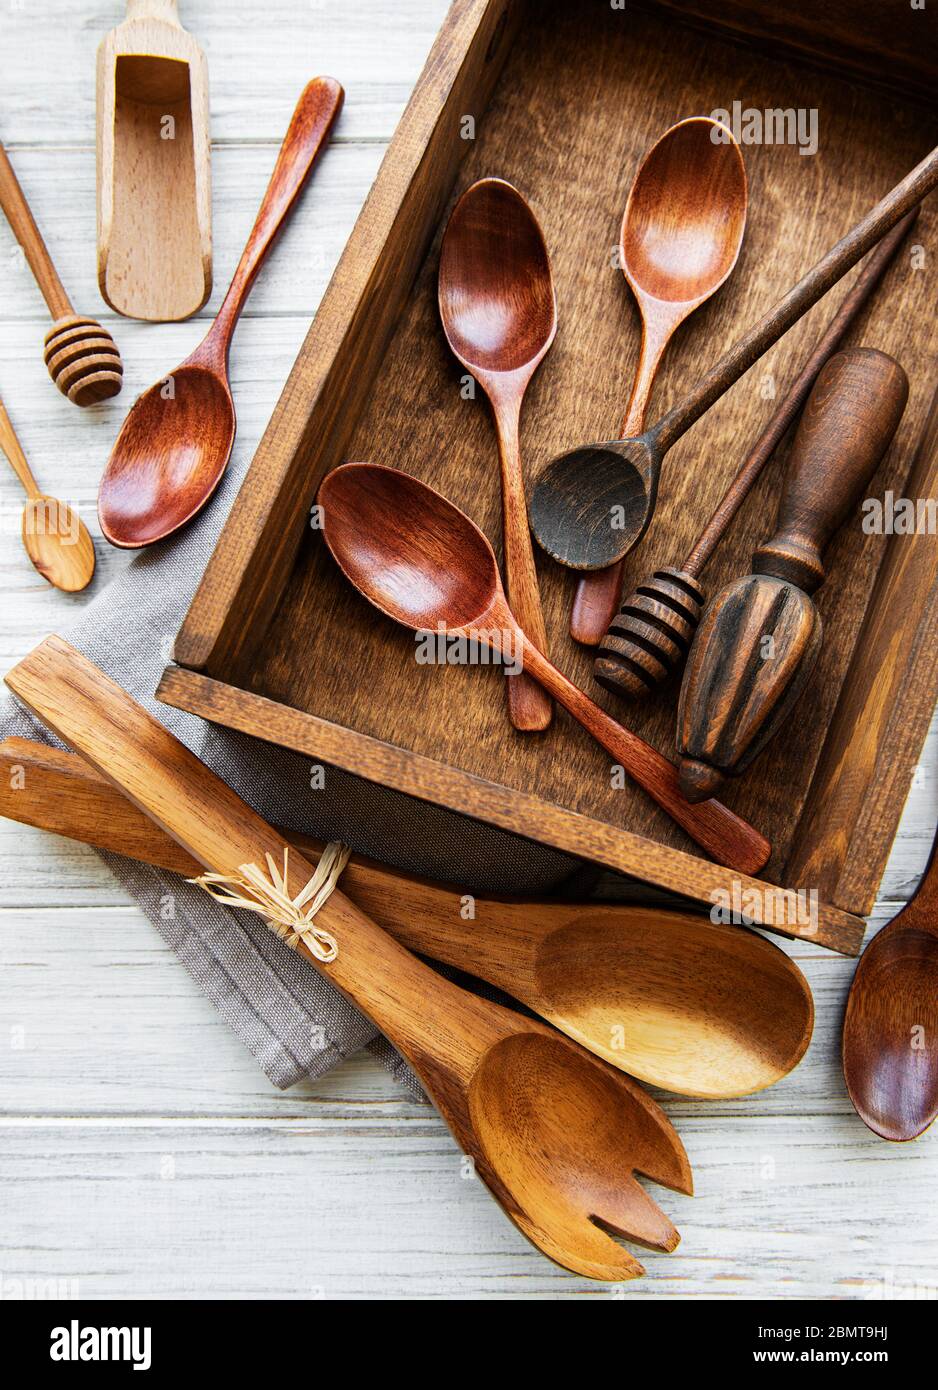 Juego de utensilios de cocina, madera y silicona, espacio de copia libre.  de cerca